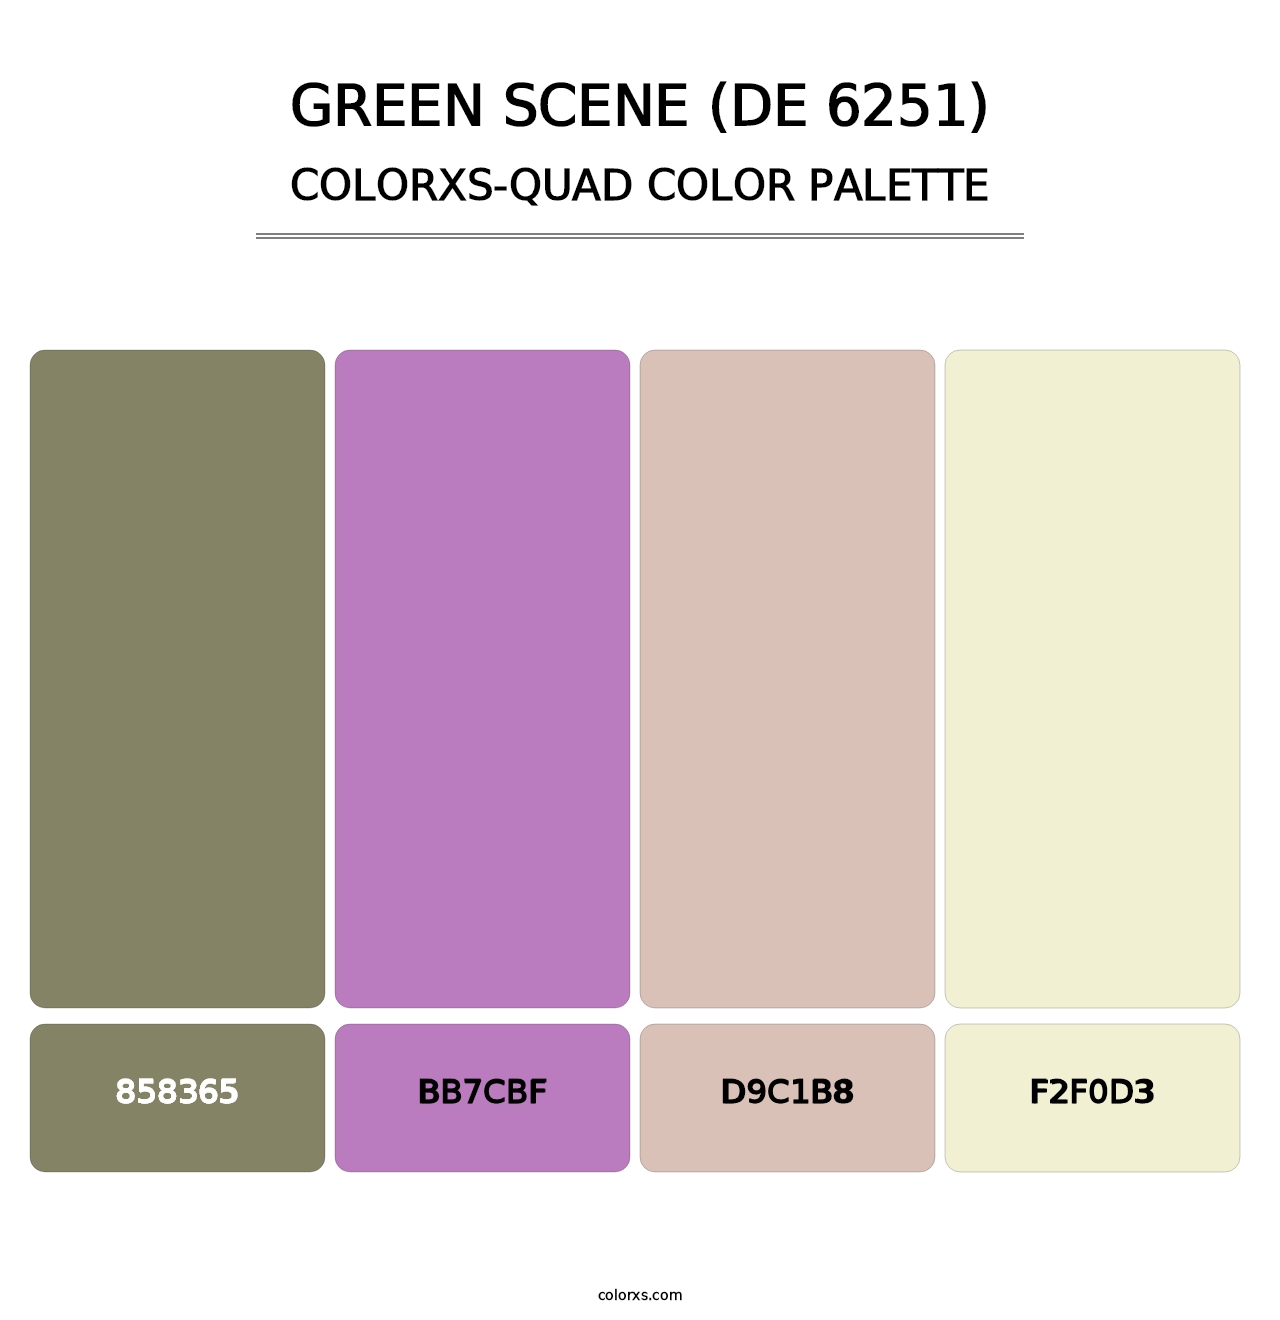 Green Scene (DE 6251) - Colorxs Quad Palette